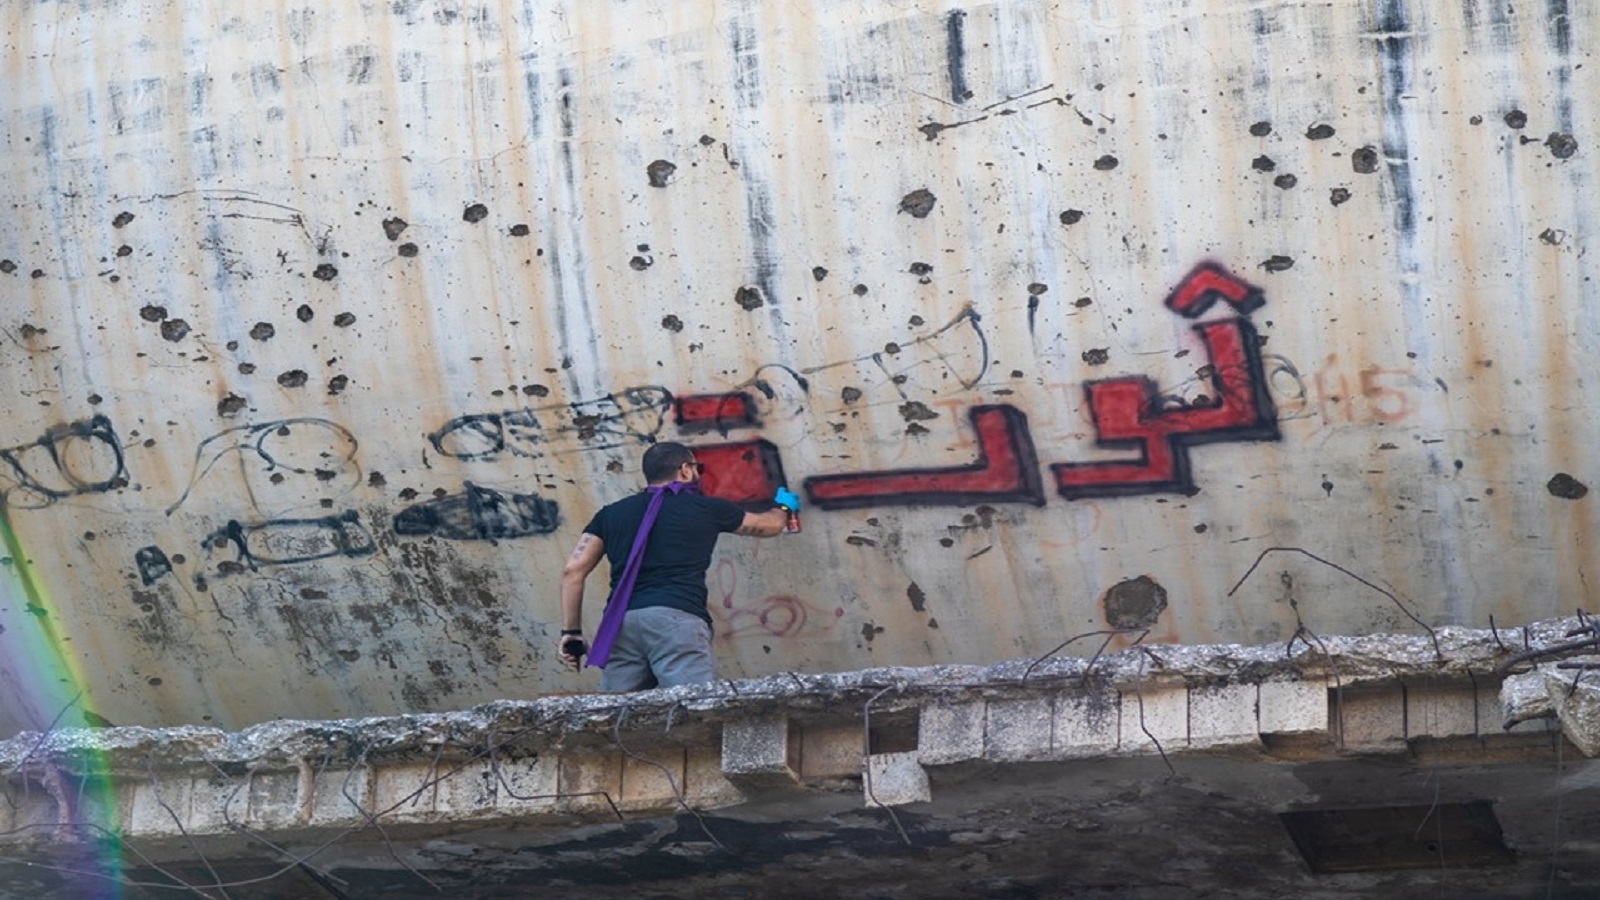 غرافيتي الثورة: "إذا الشعب جاع بياكل حكّامه"